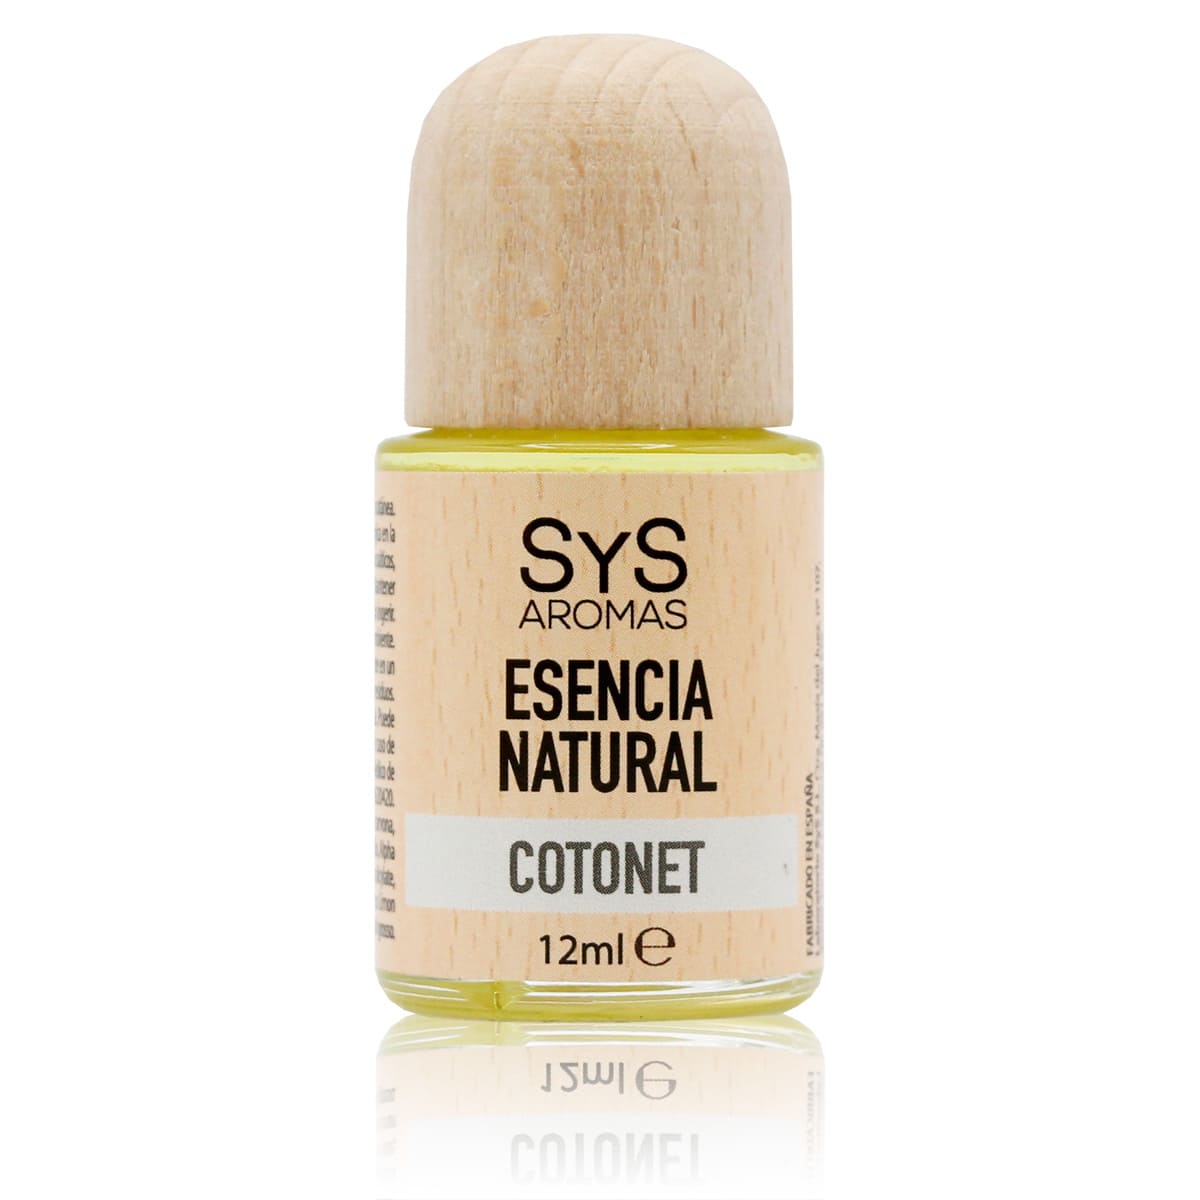 Buy Cotonet Essence 12ml SYS Aromas